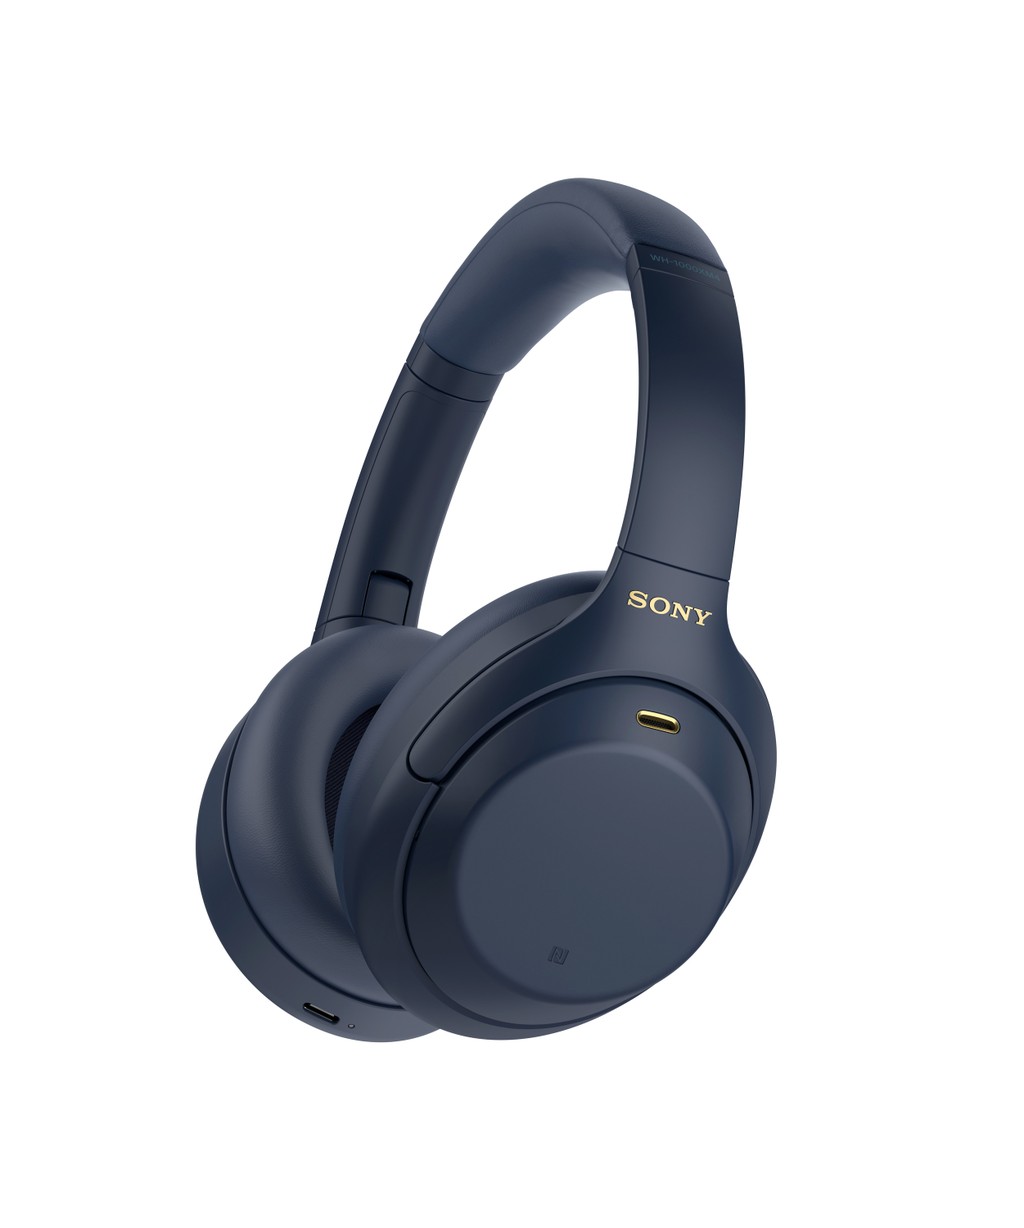 Sony giới thiệu tai nghe chống ồn WH-1000XM4 Xanh bóng đêm giá 8,5 triệu ảnh 4